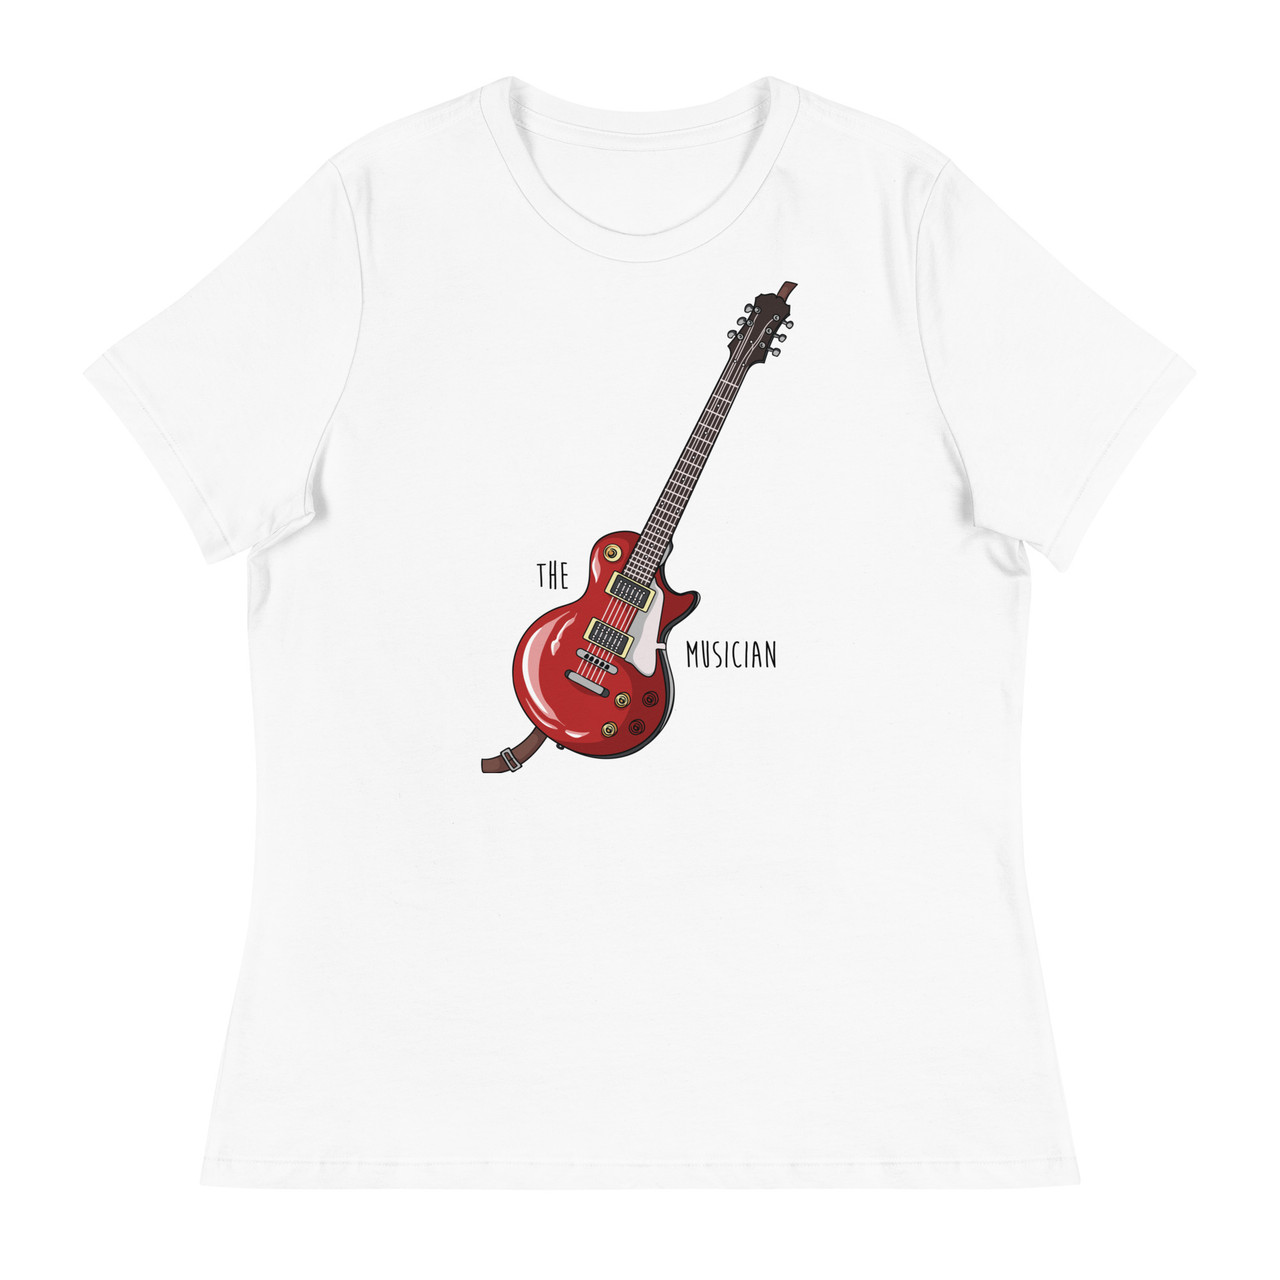 The Musician Women's Relaxed T-Shirt - Bella + Canvas 6400 